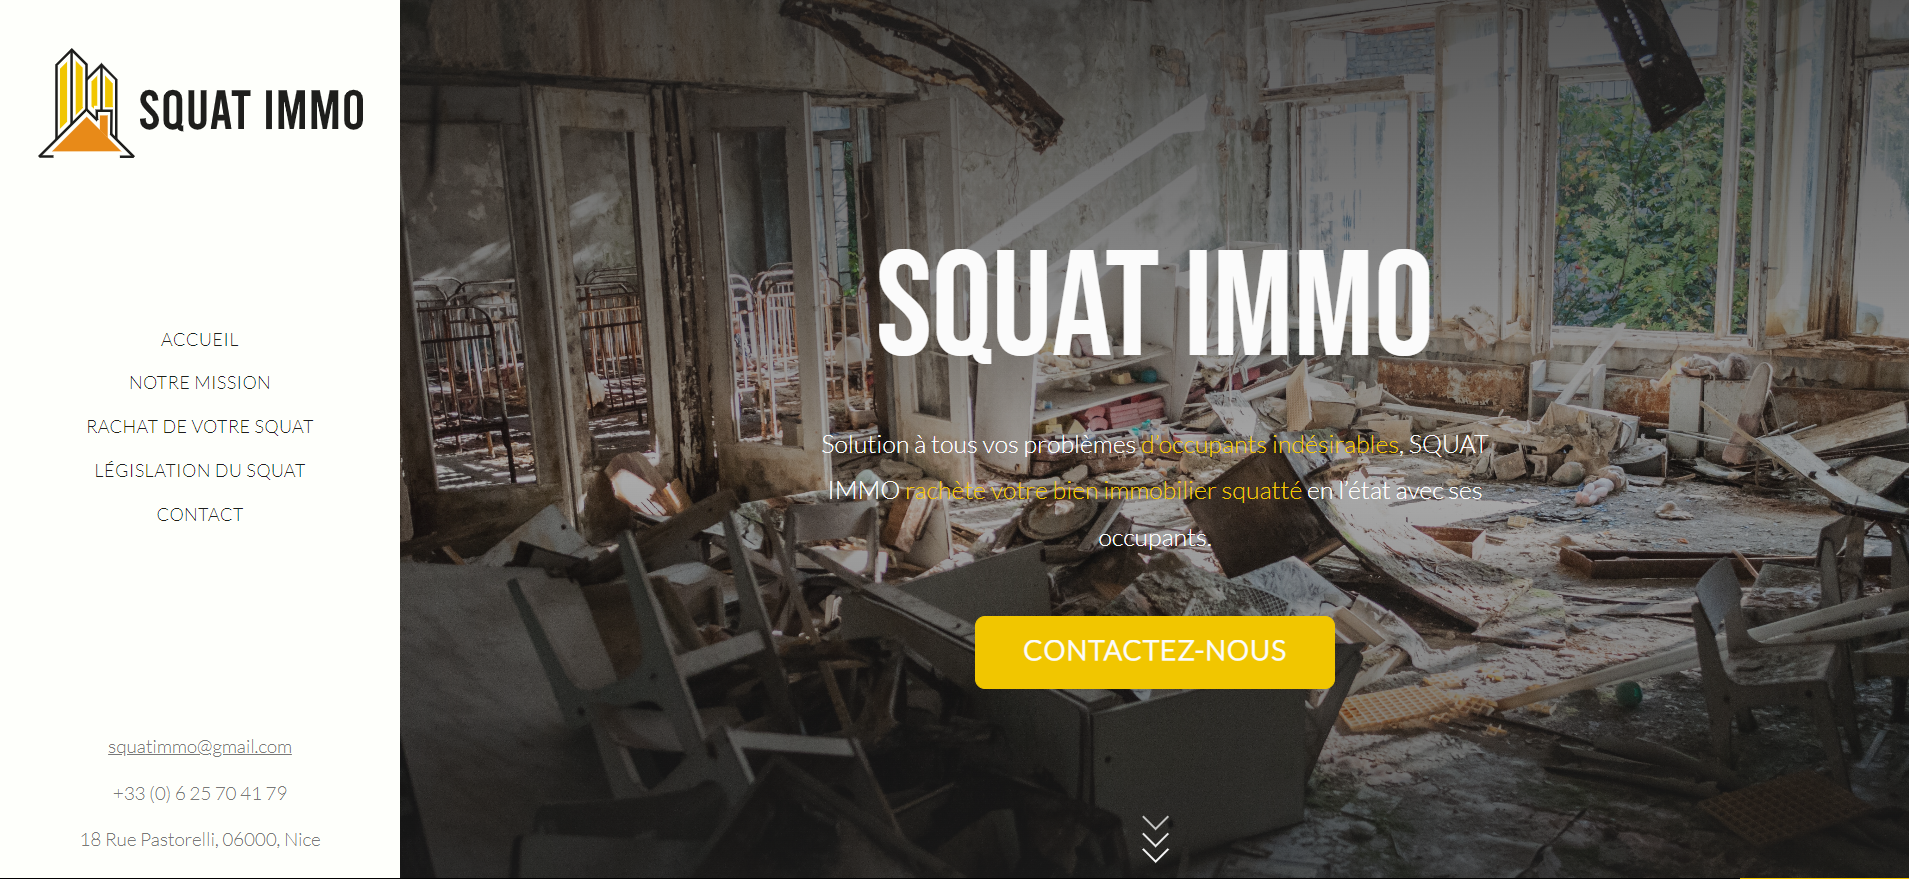 Présentation site internet Squat Immo